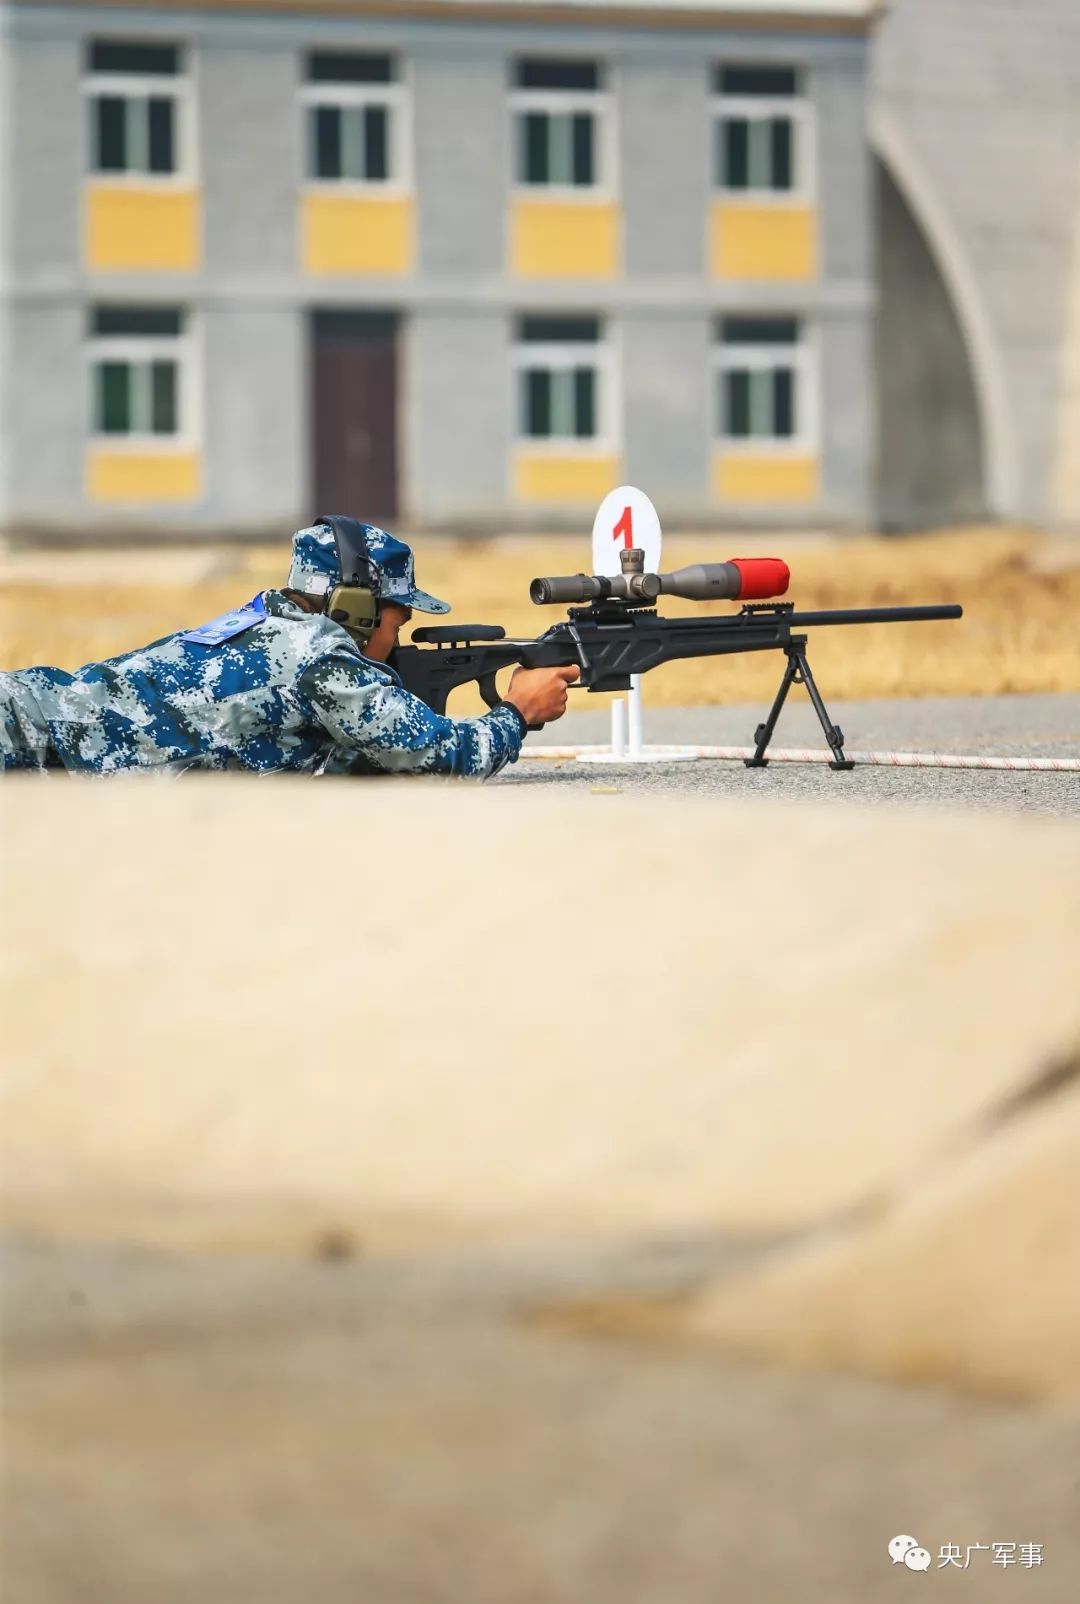 10月22日,挑战狙击课目中,参赛队员在狙击步枪瞄准镜遮蔽情况下实施